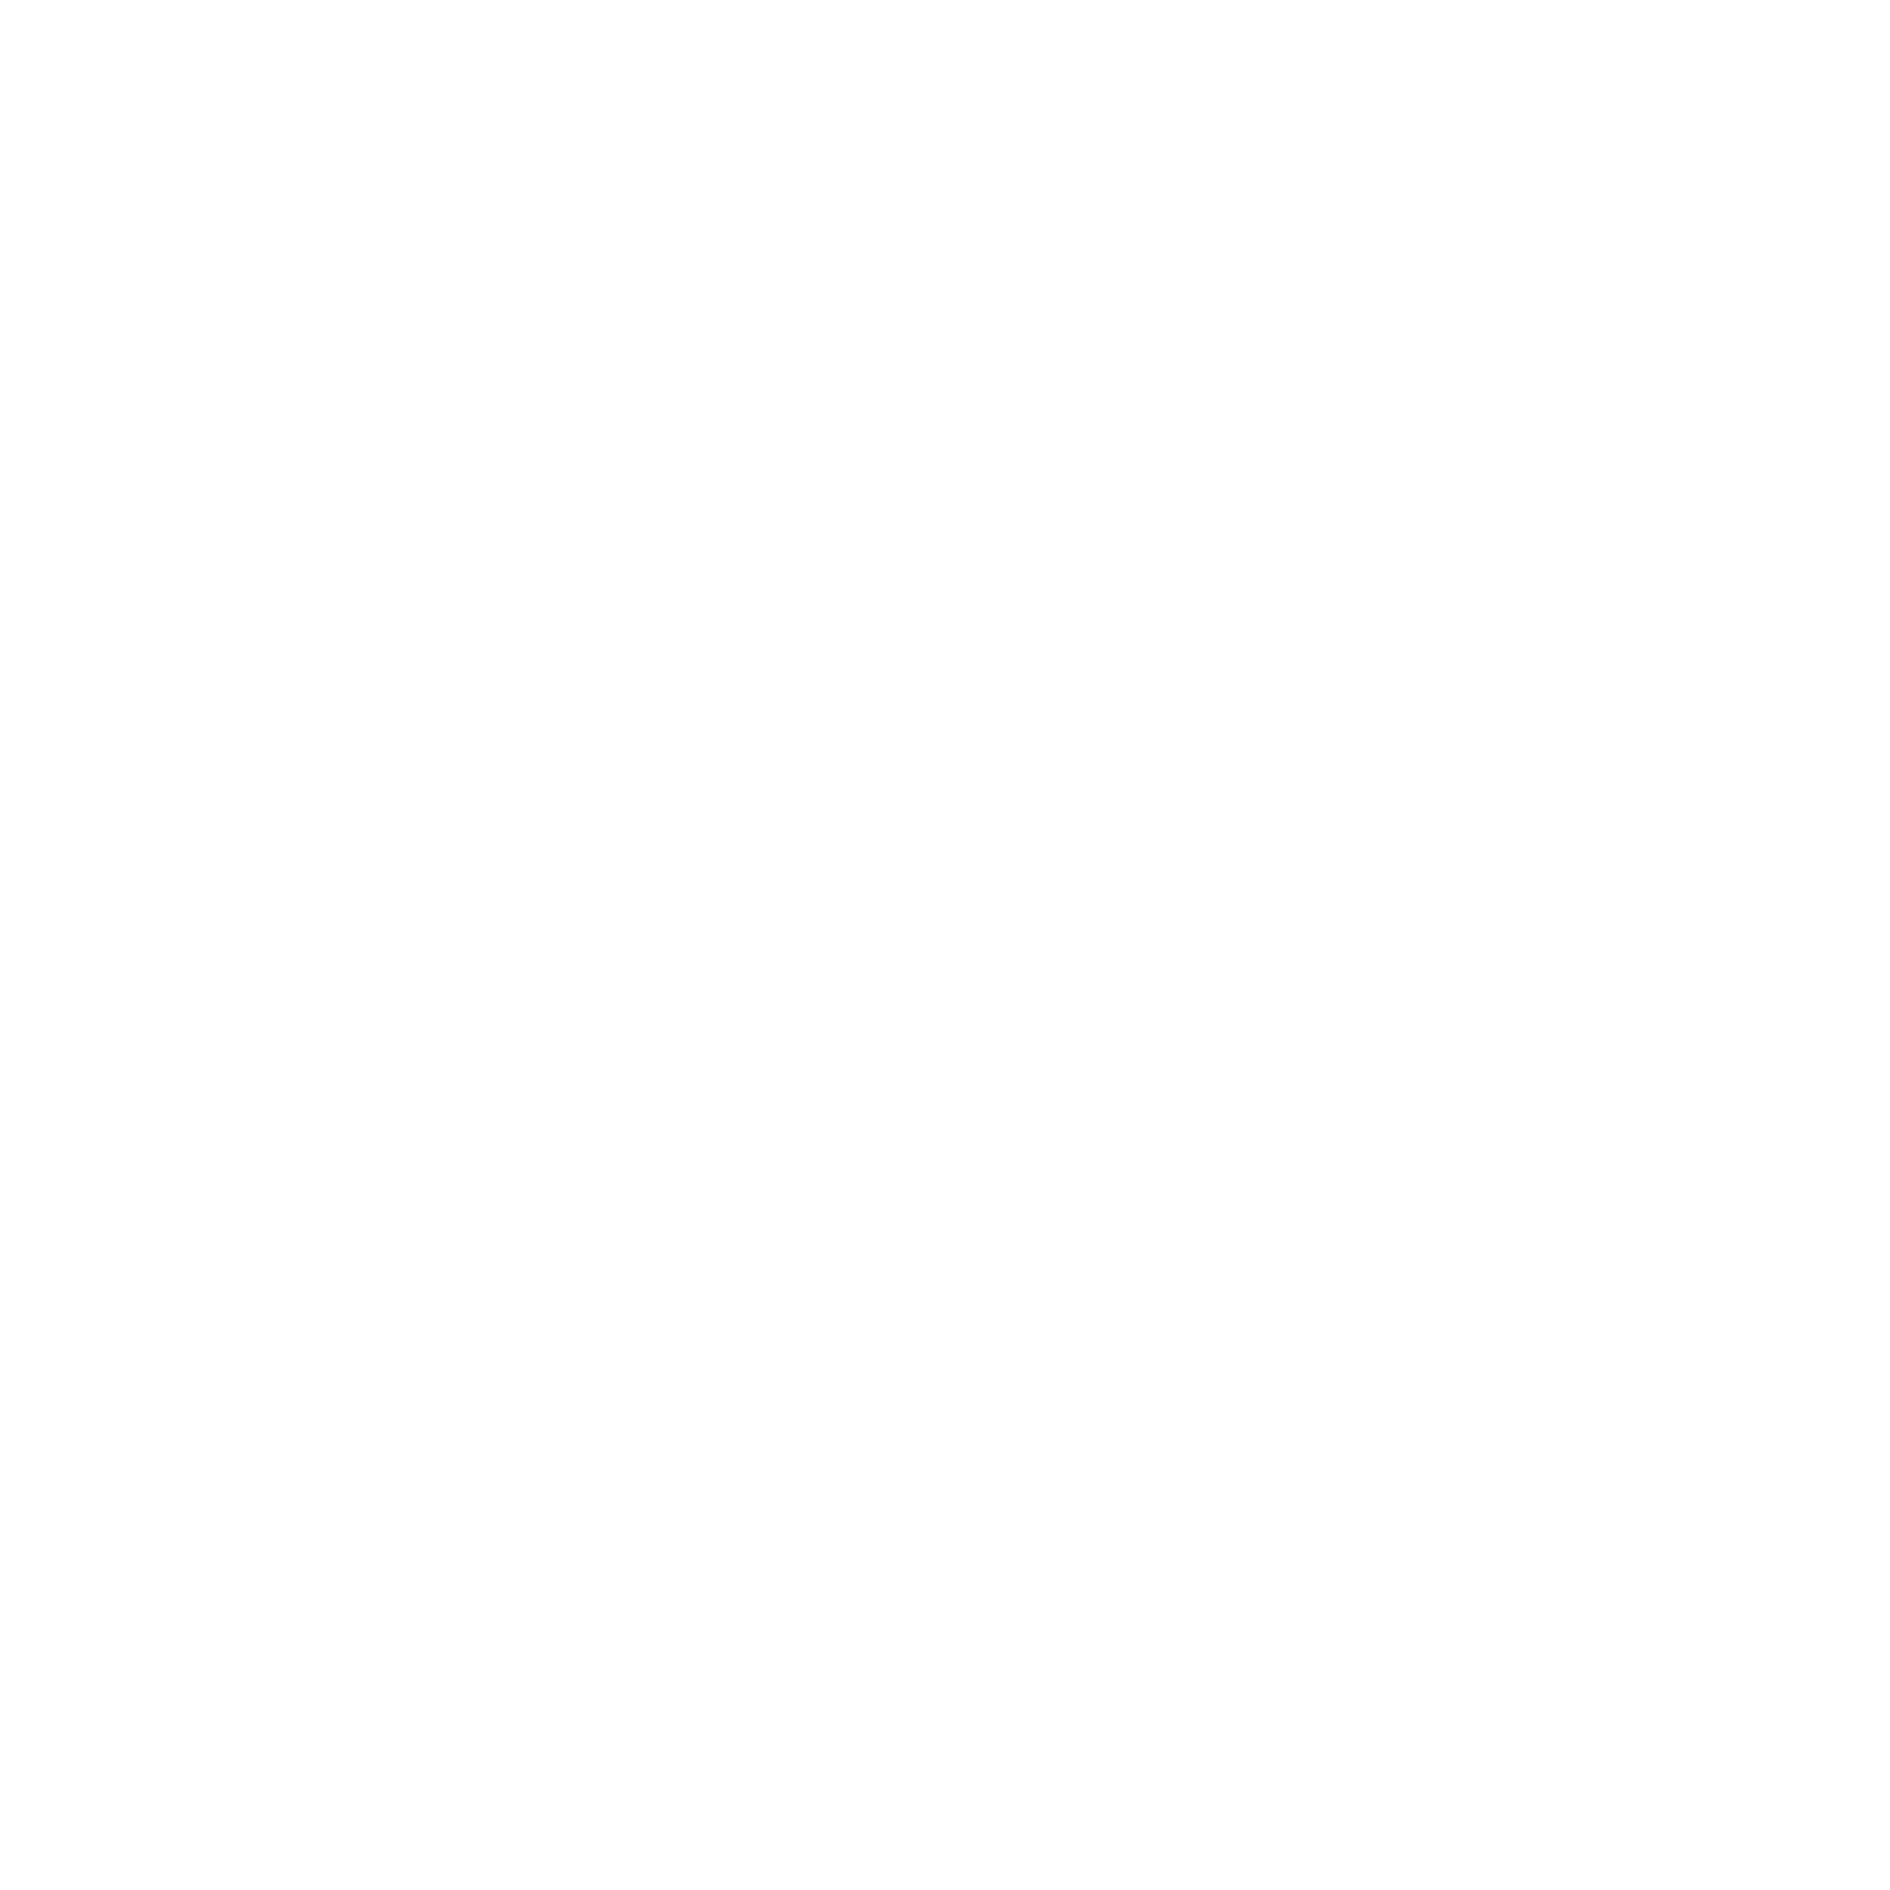 Illustration einer Uhr mit gestrichelter Linie zwischen neun und zwölf Uhr.